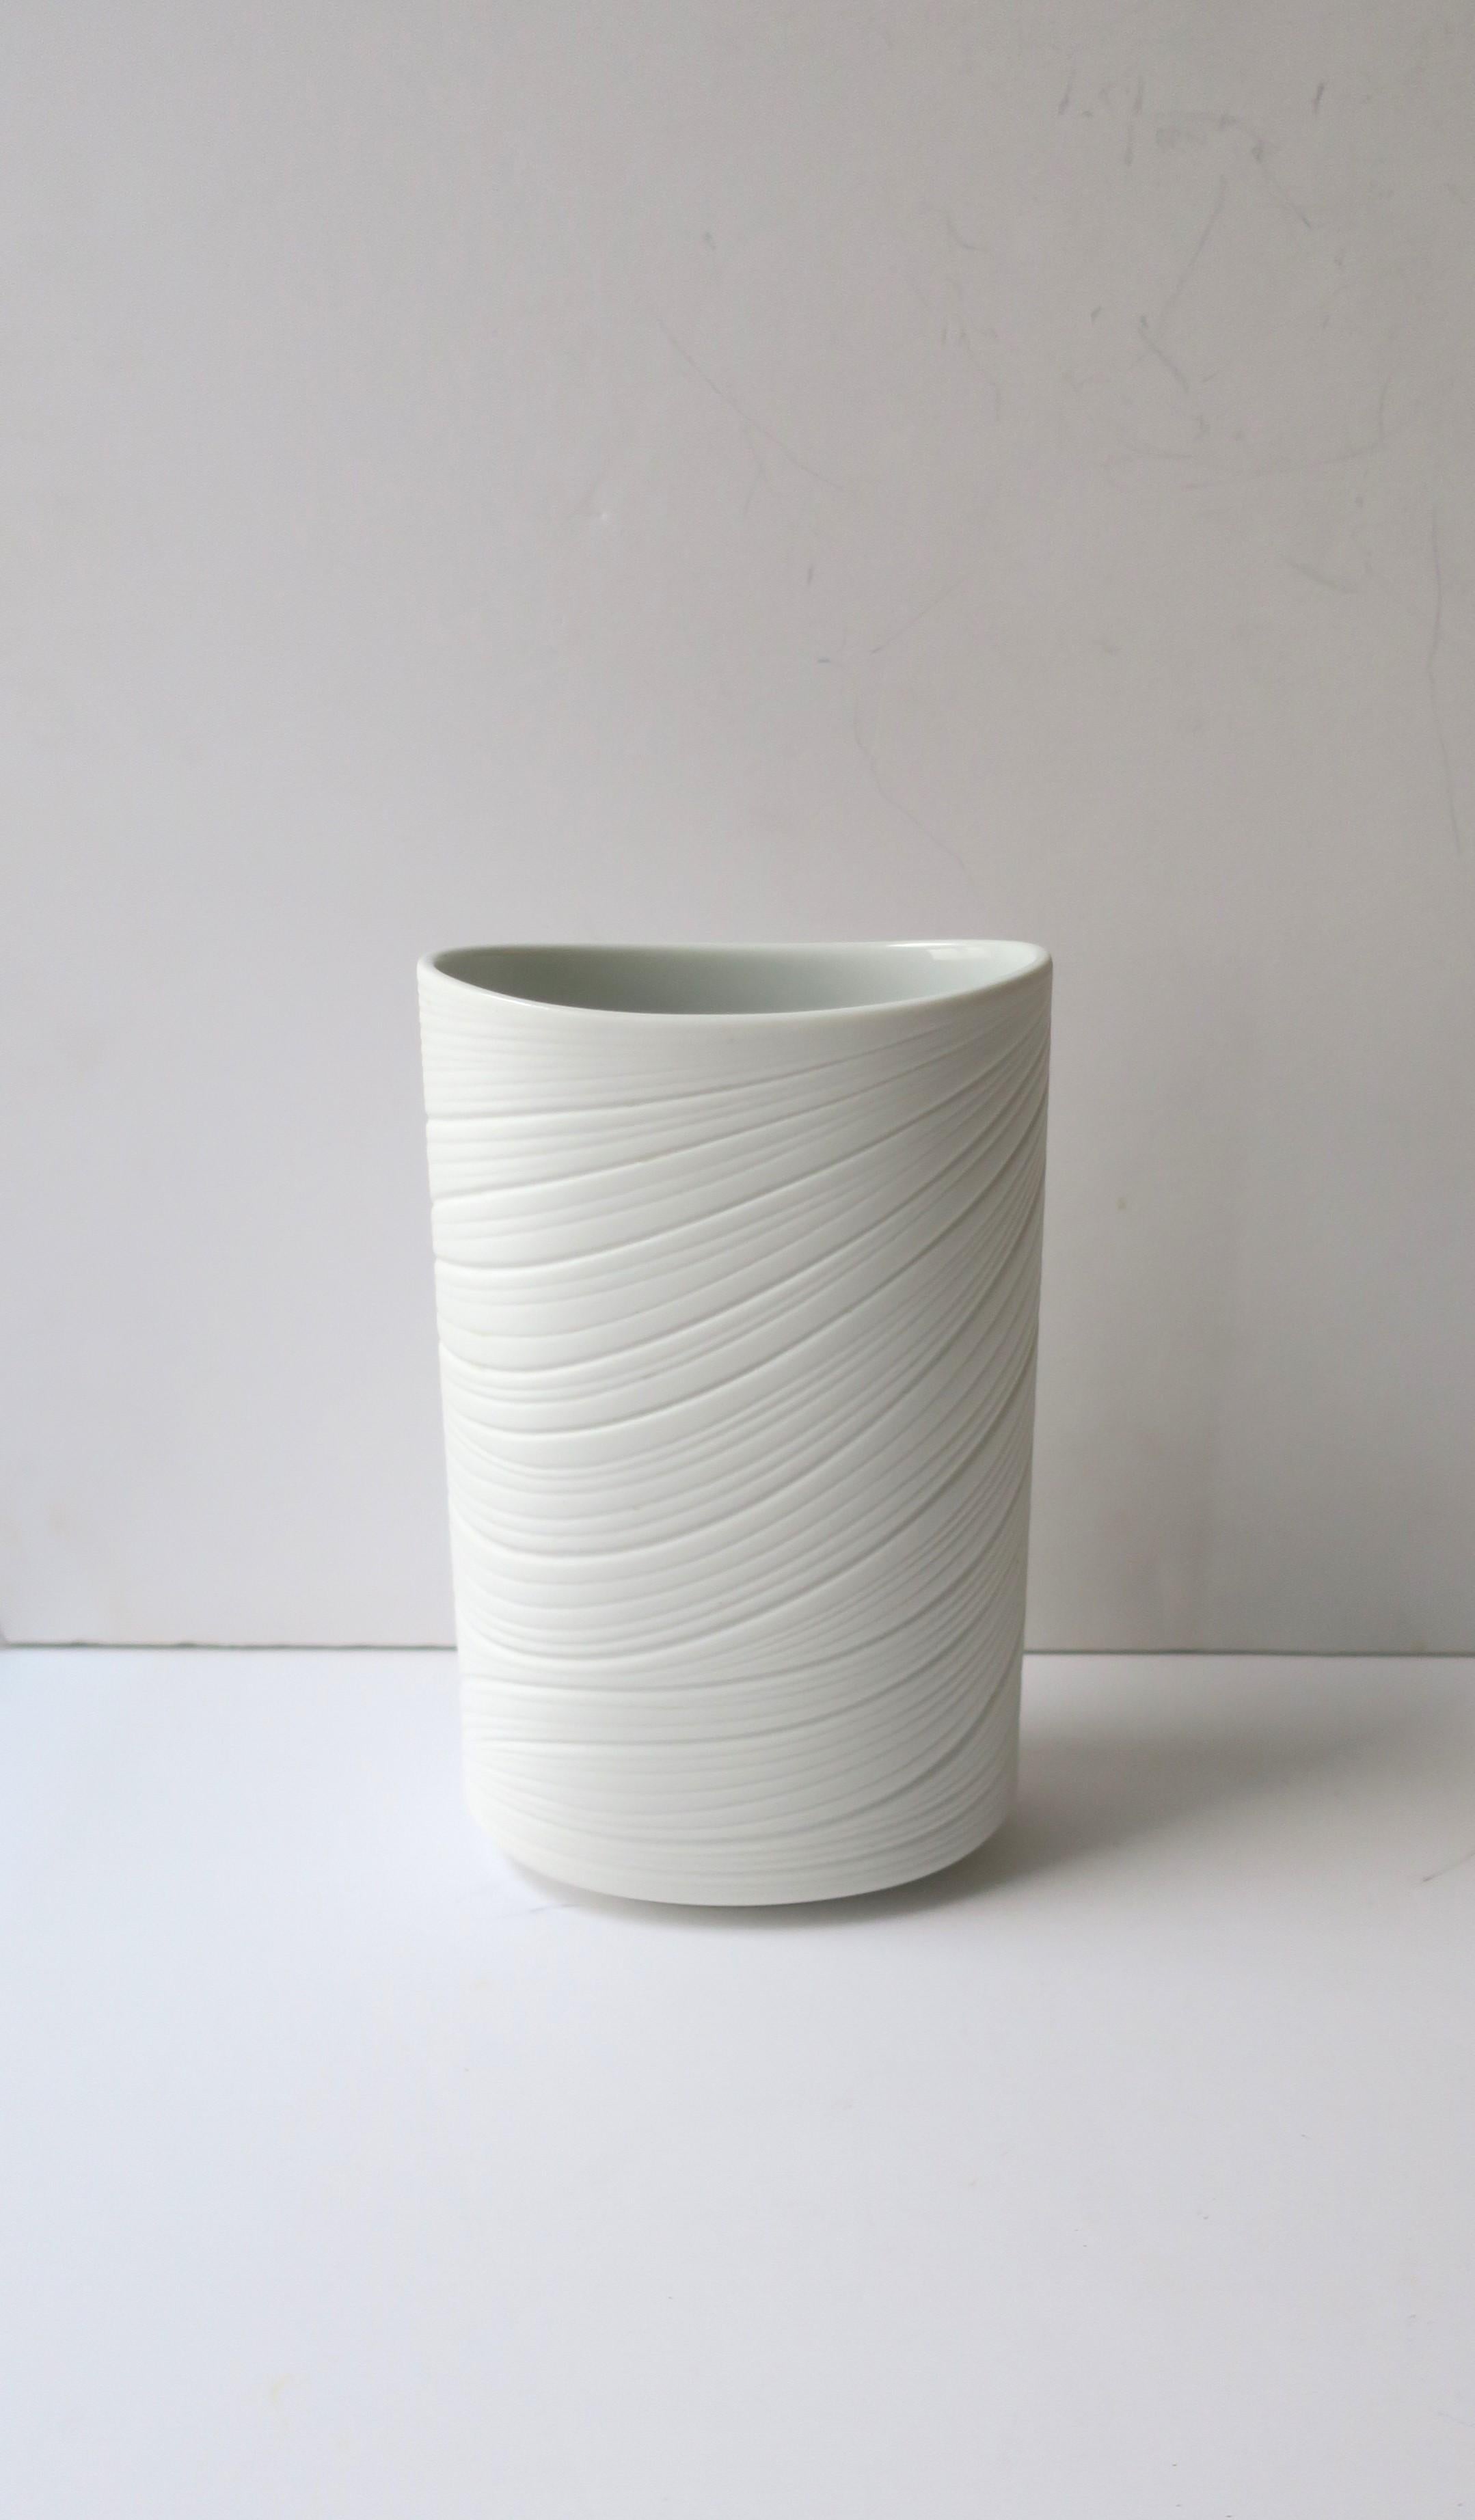 Vase allemand en porcelaine blanche mate de Rosenthal Studio-Line Collection, vers la fin du XXe siècle, Allemagne. De forme ovale, il présente un design moderne et organique sur tout son pourtour - devant, sur les côtés et au dos. Marque du